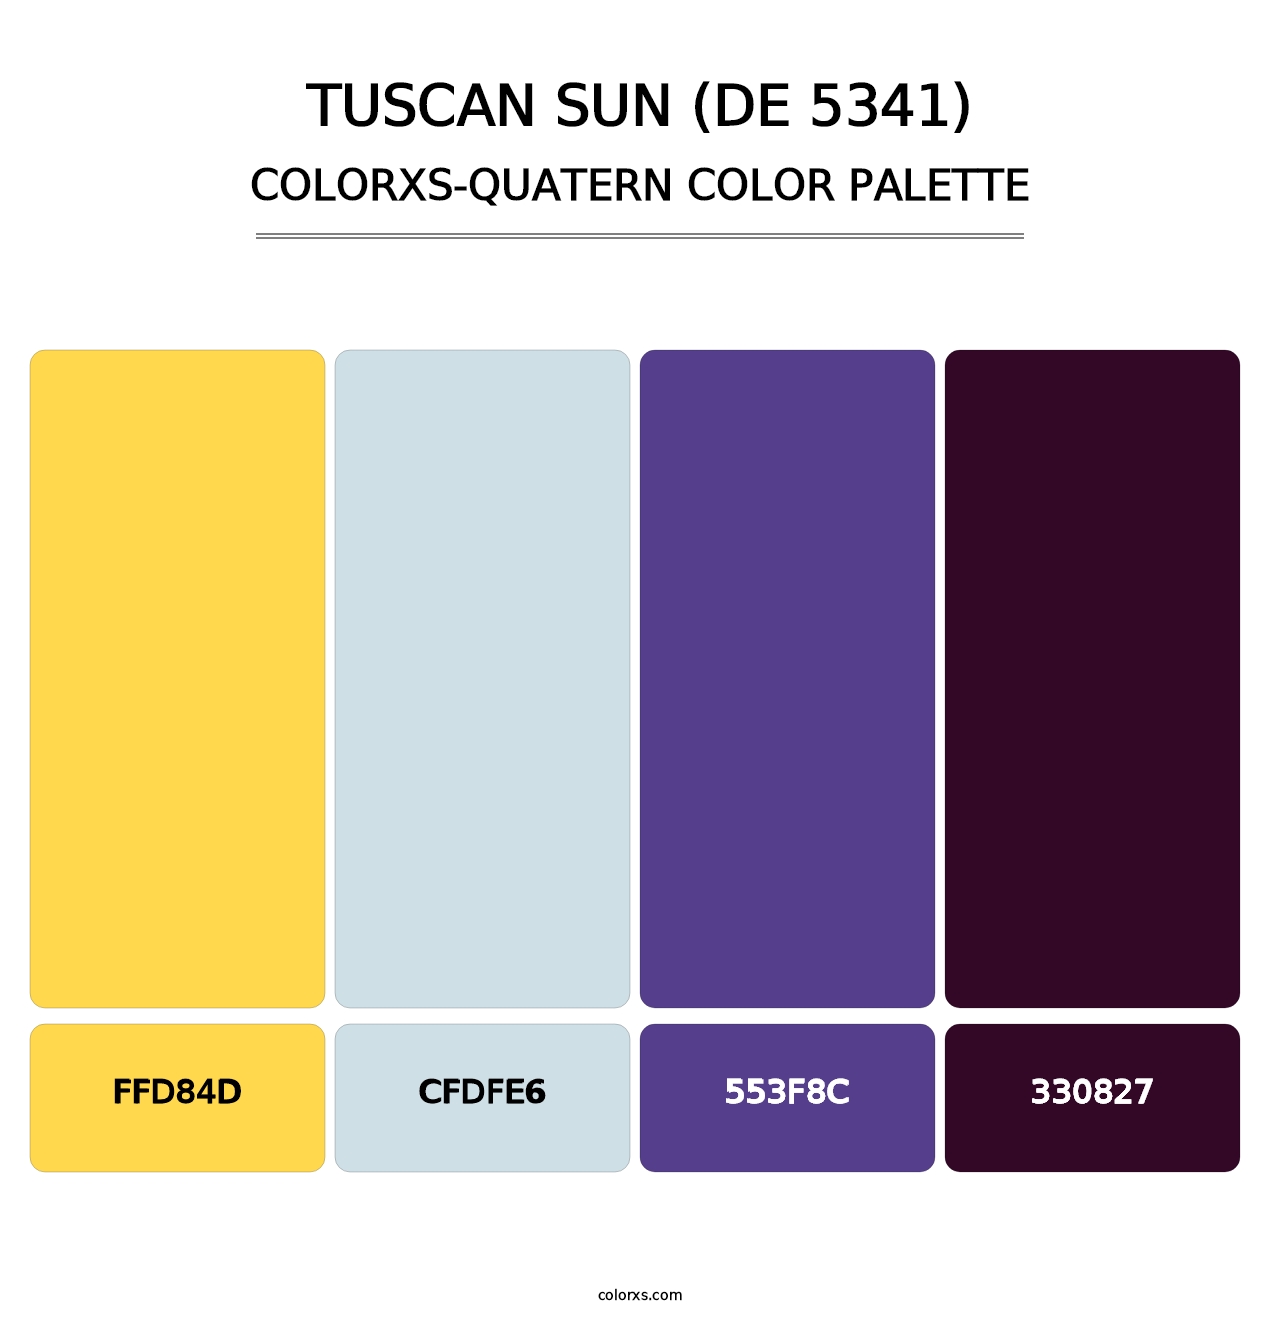 Tuscan Sun (DE 5341) - Colorxs Quatern Palette